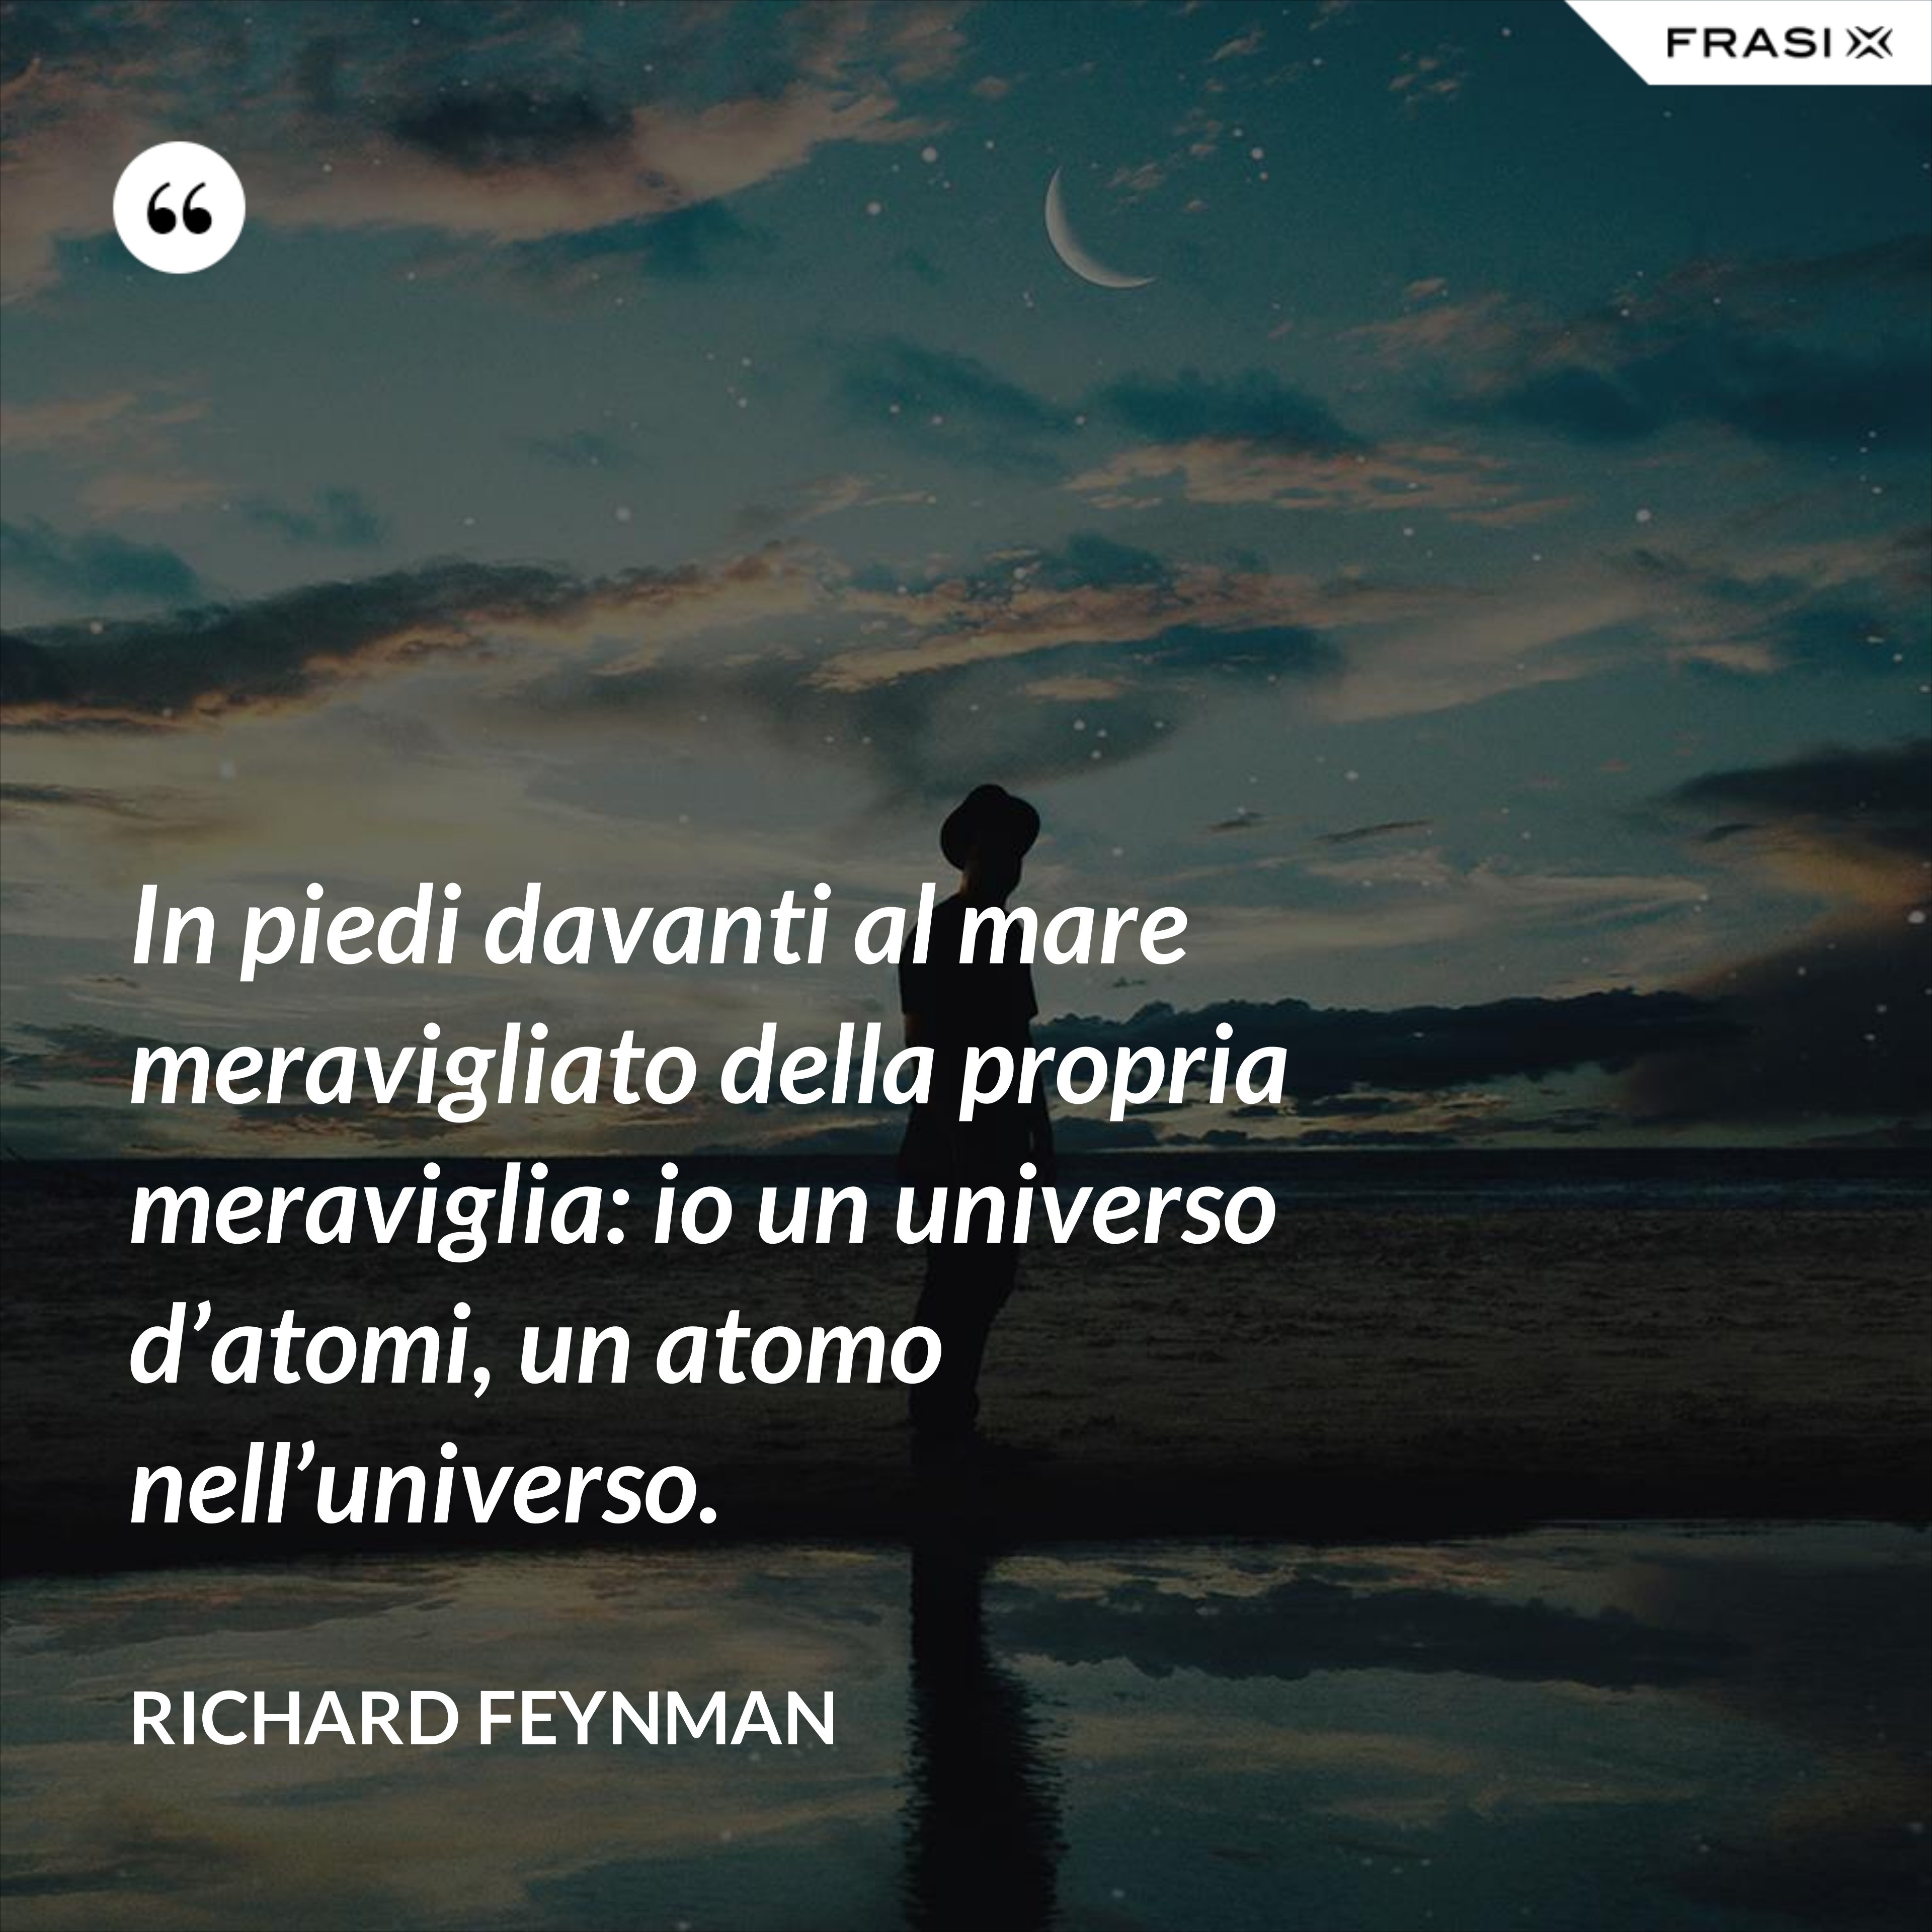 In piedi davanti al mare meravigliato della propria meraviglia: io un universo d’atomi, un atomo nell’universo. - Richard Feynman